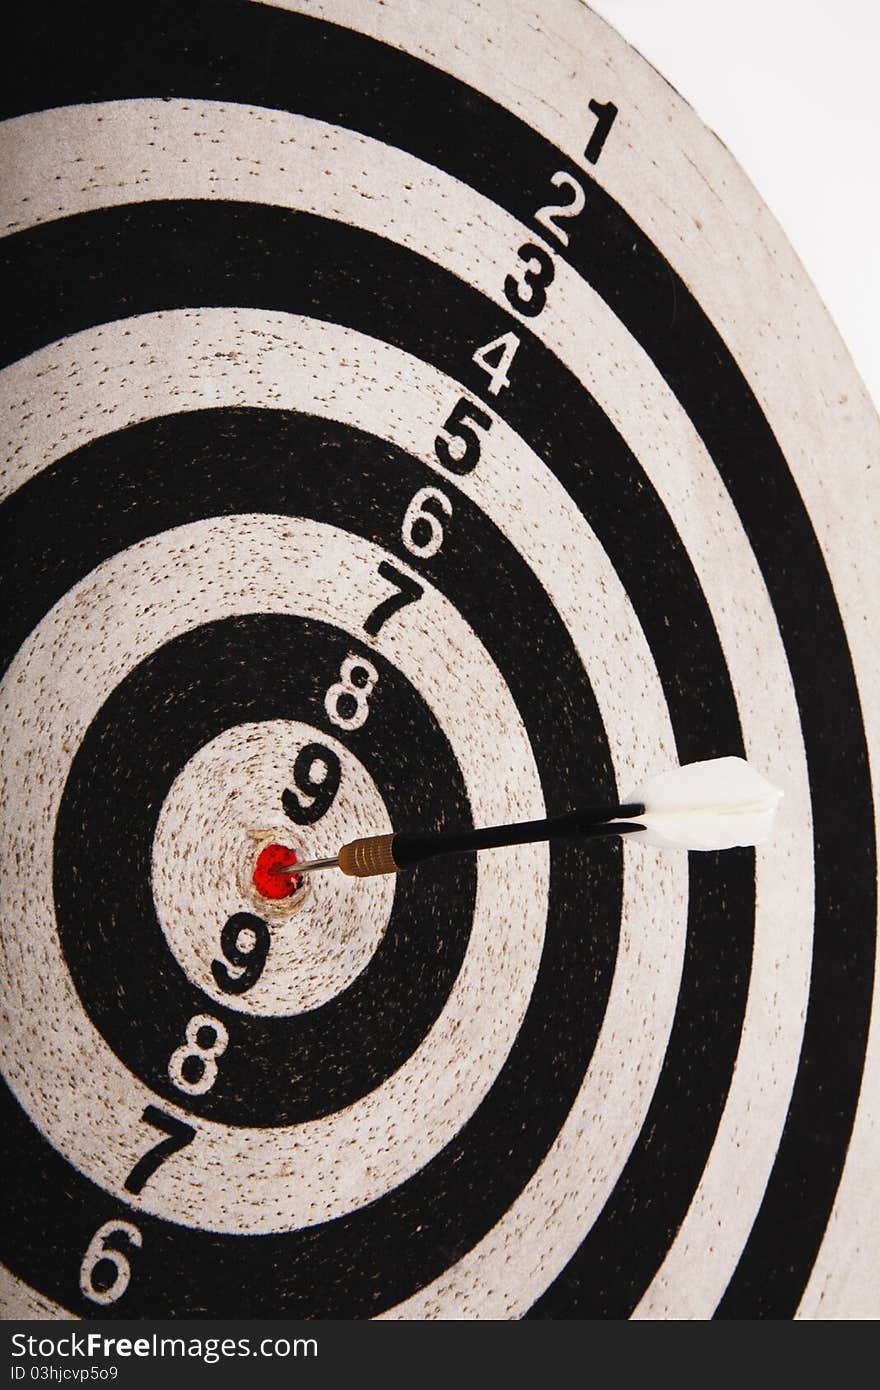 Closeup of dartboard target and dart arrow